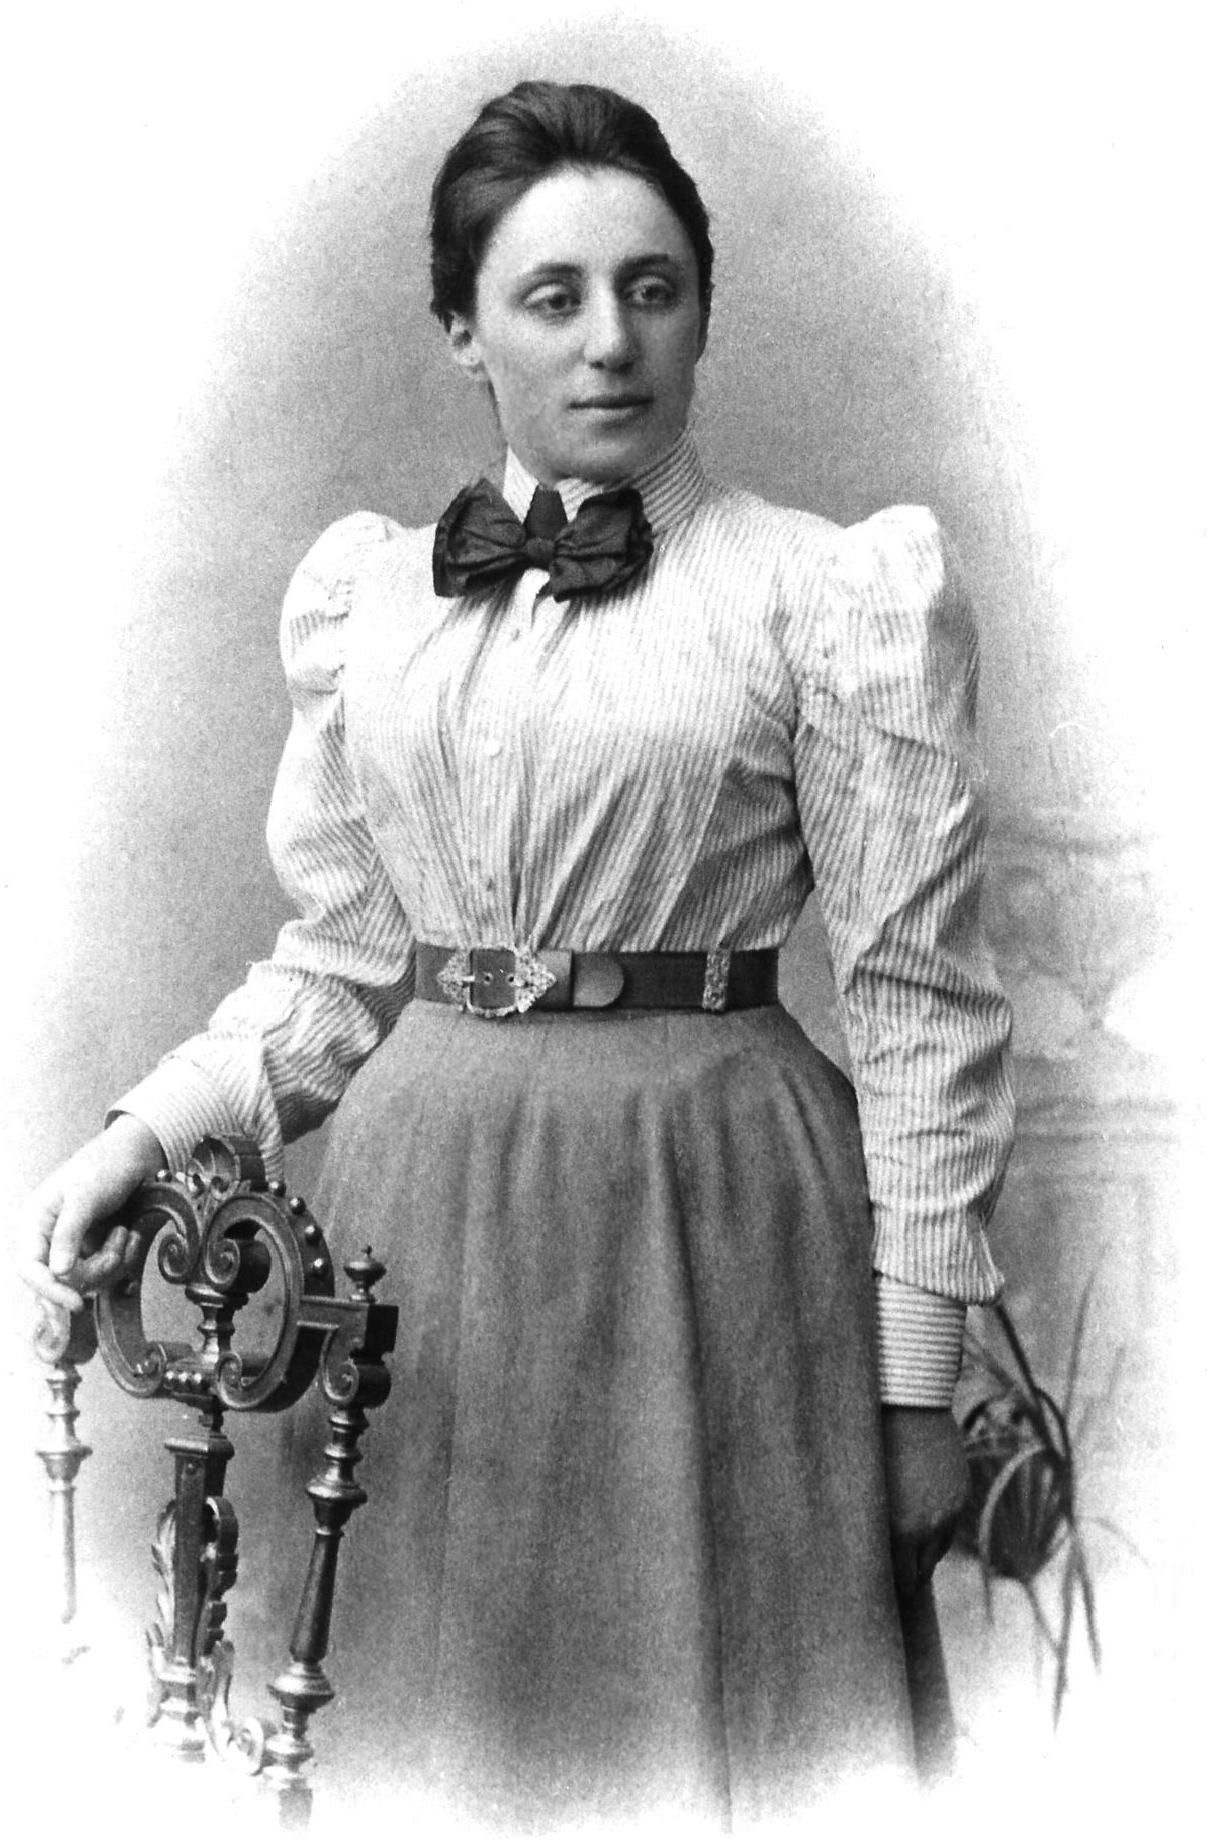 Fotografía de Emmy Noether de pie junto a una silla.